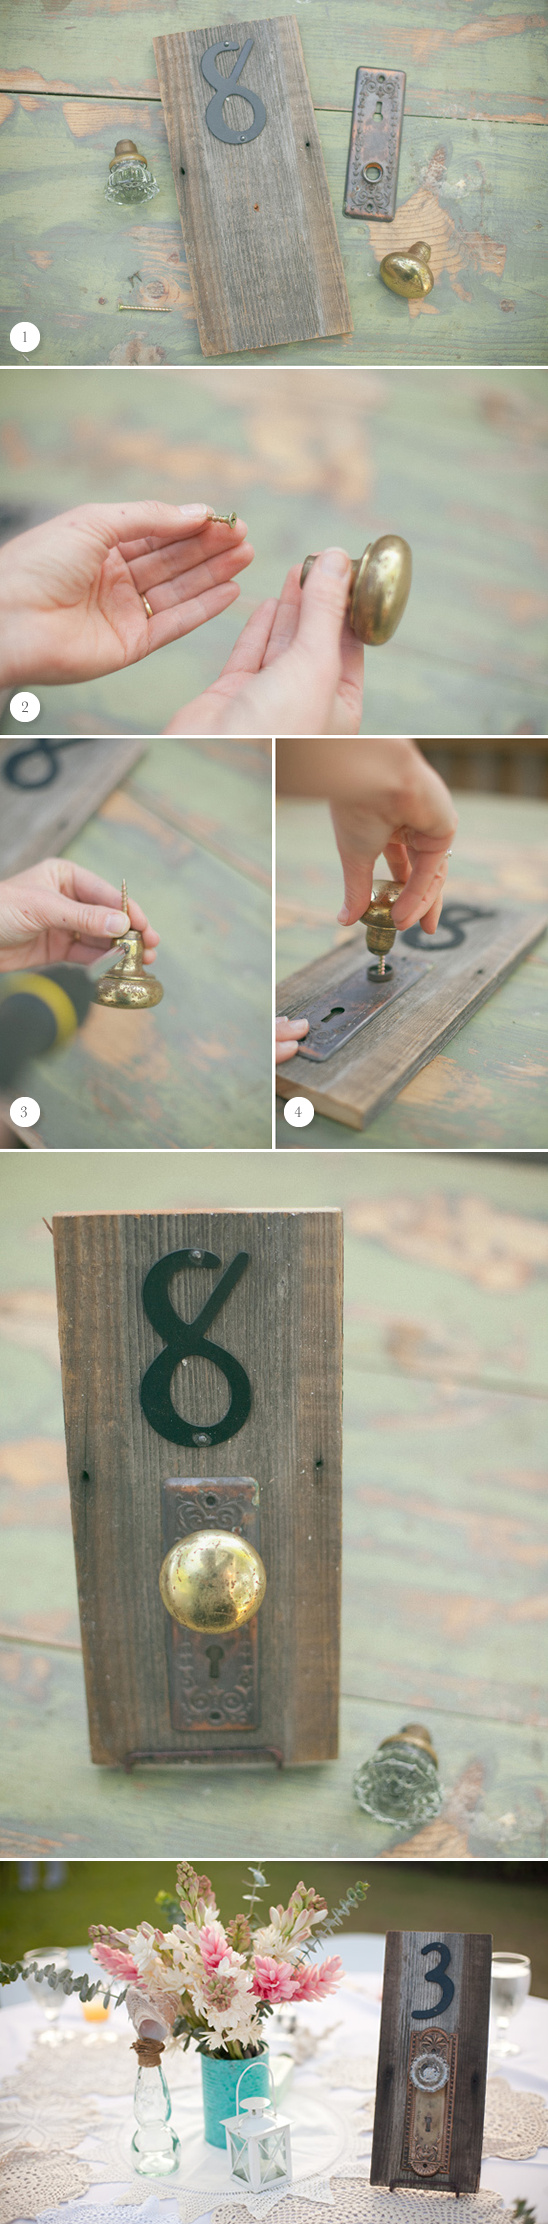 DIY Antique Doorknob Table Numbers